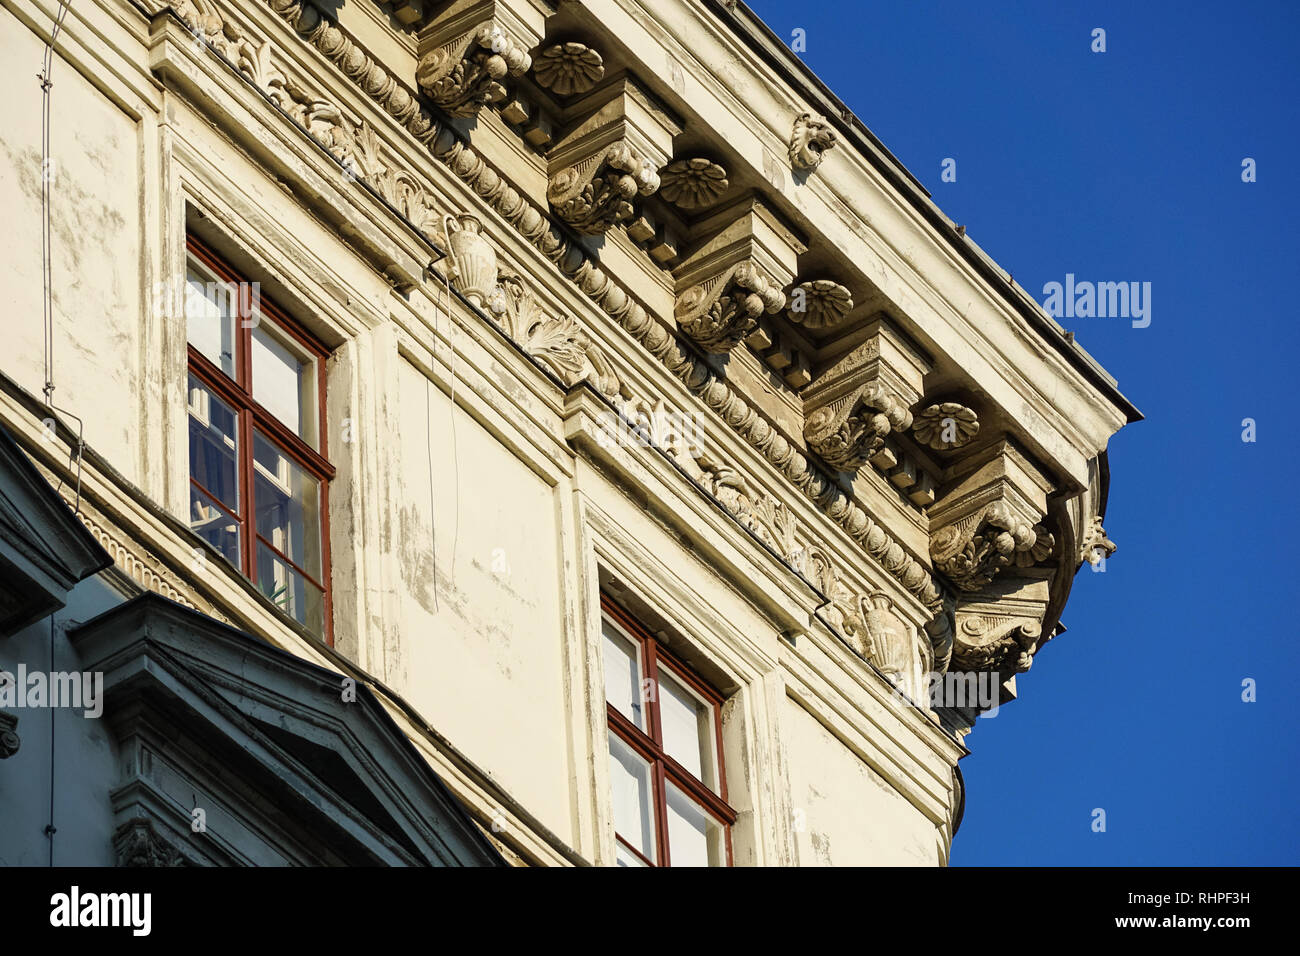 Les détails architecturaux sur les bâtiments à Vienne, Autriche Banque D'Images